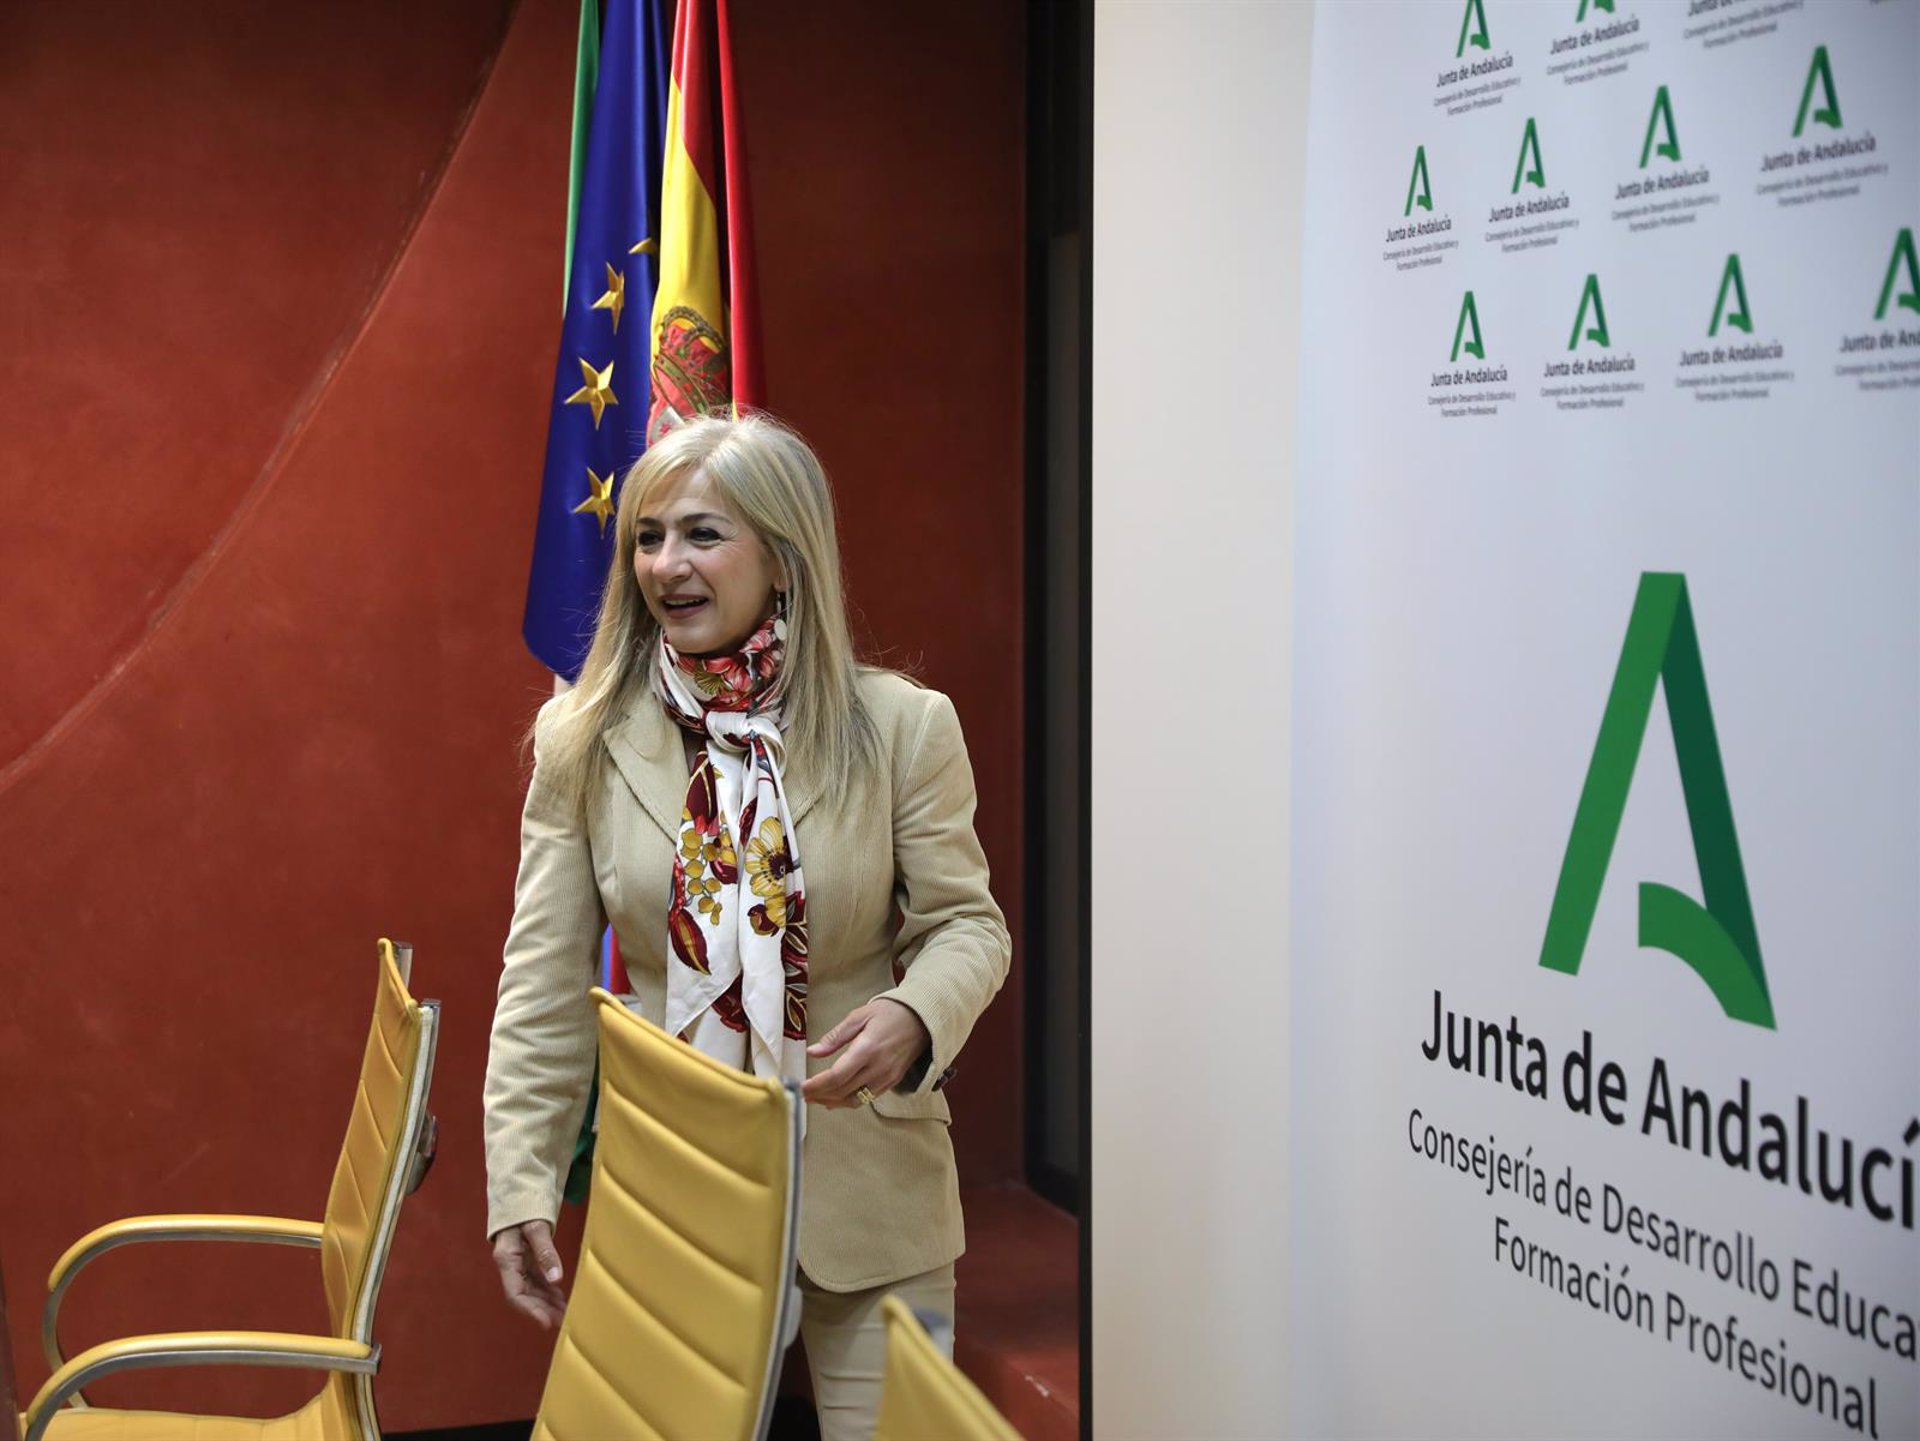 La consejera de Desarrollo Educativo y Formación Profesional de la Junta de Andalucía, Patricia del Pozo